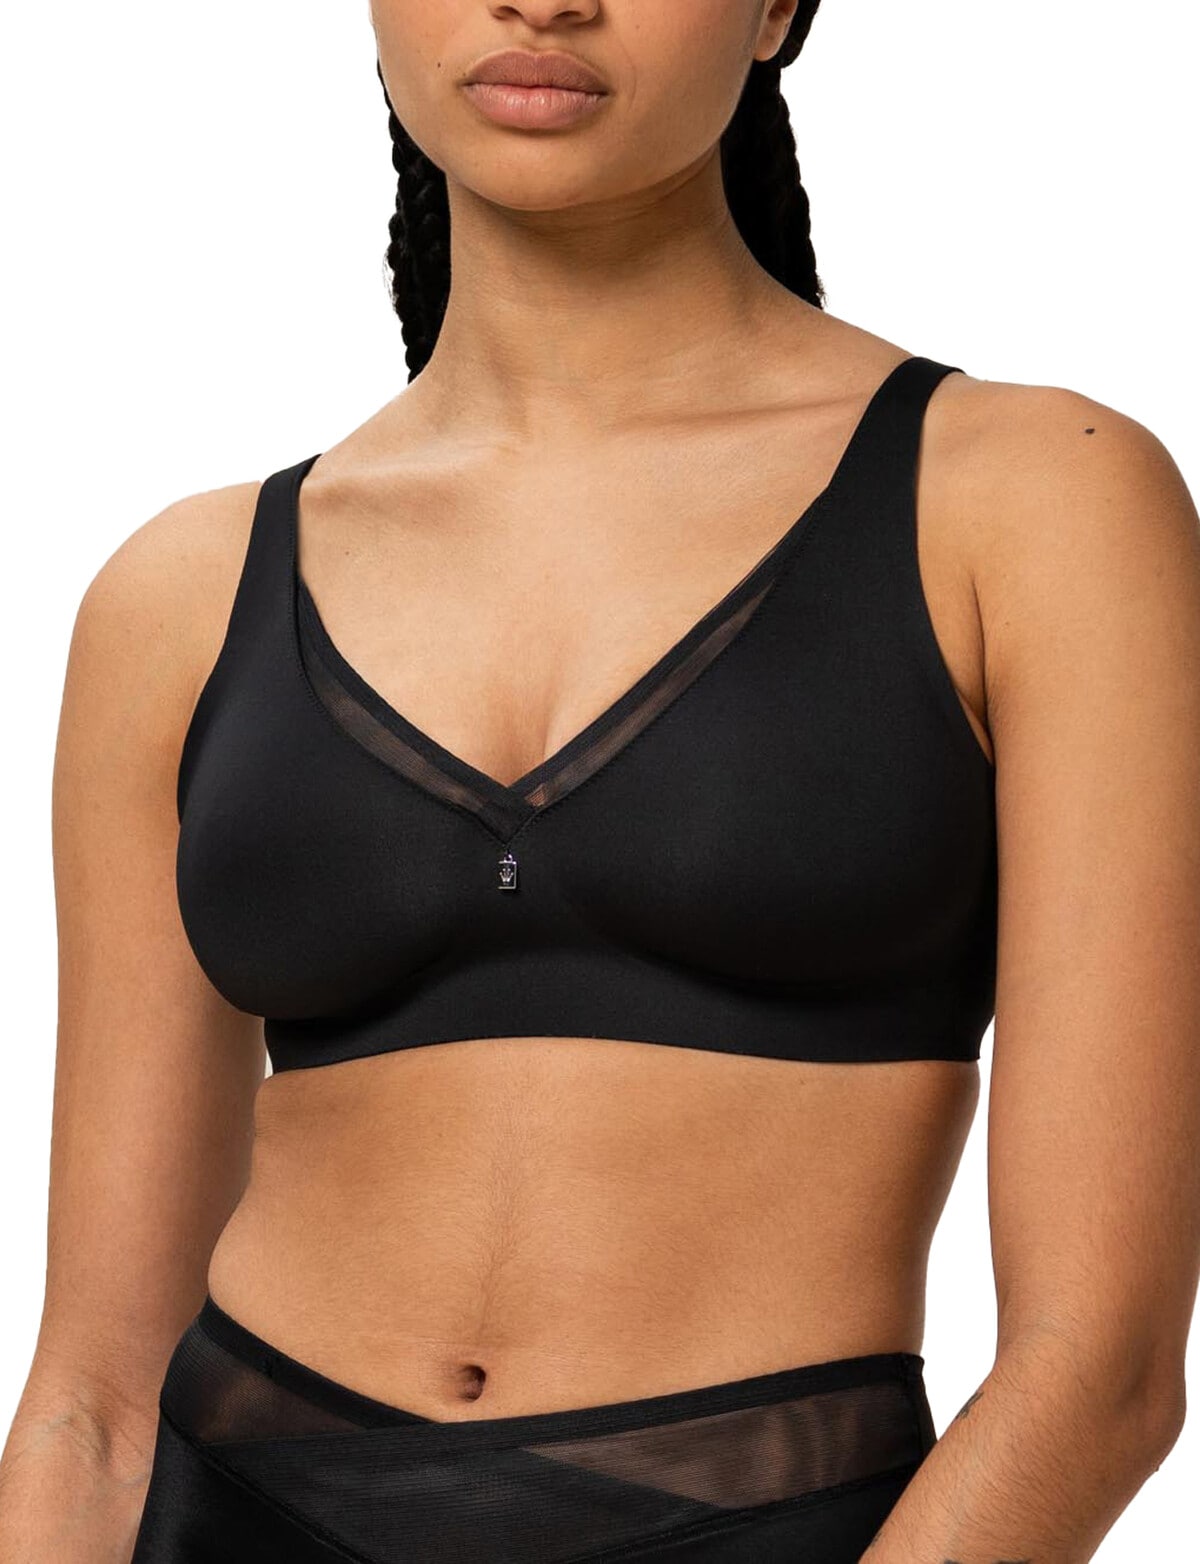 Triumph's Magic Wire bra - the most comfortable underwire bra ever? - Her  World Singapore